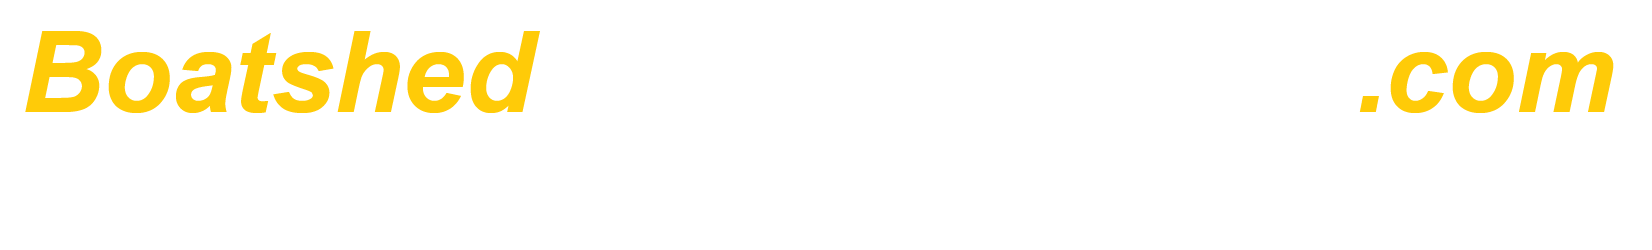 BoatshedFortLauderdale.com - International Yacht Brokers